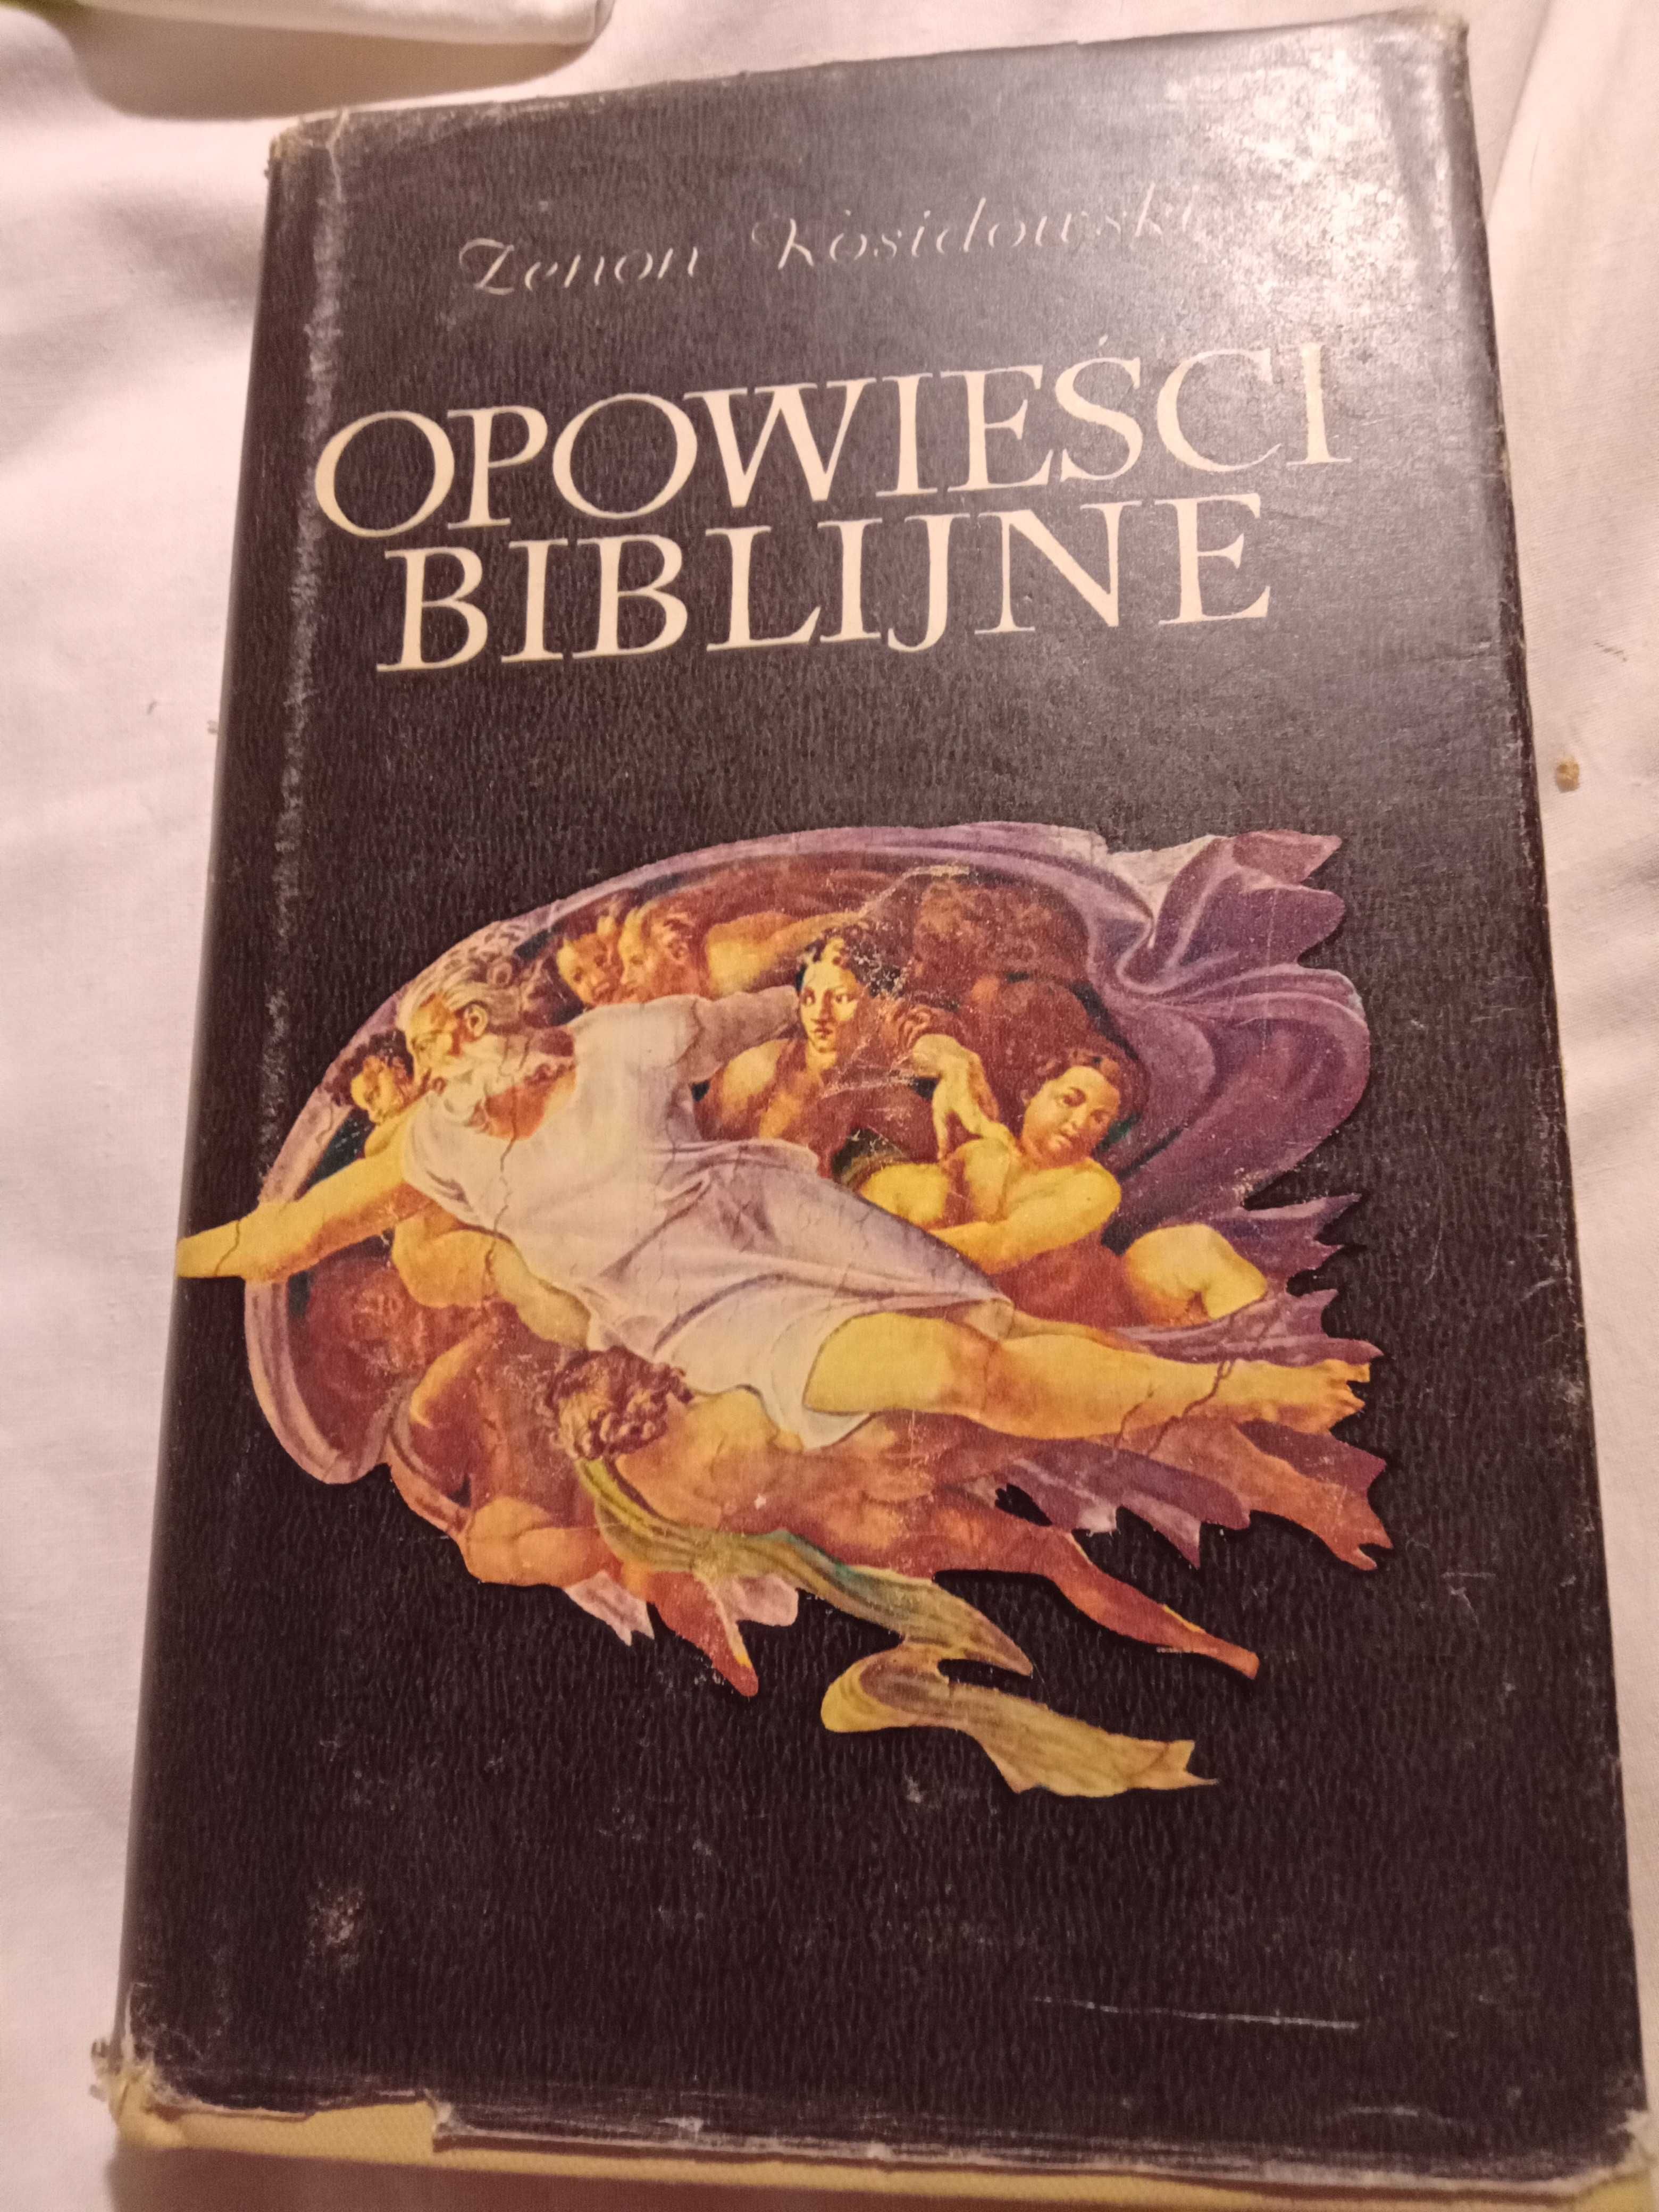 Opowieści biblijne - zenon Kosidowski